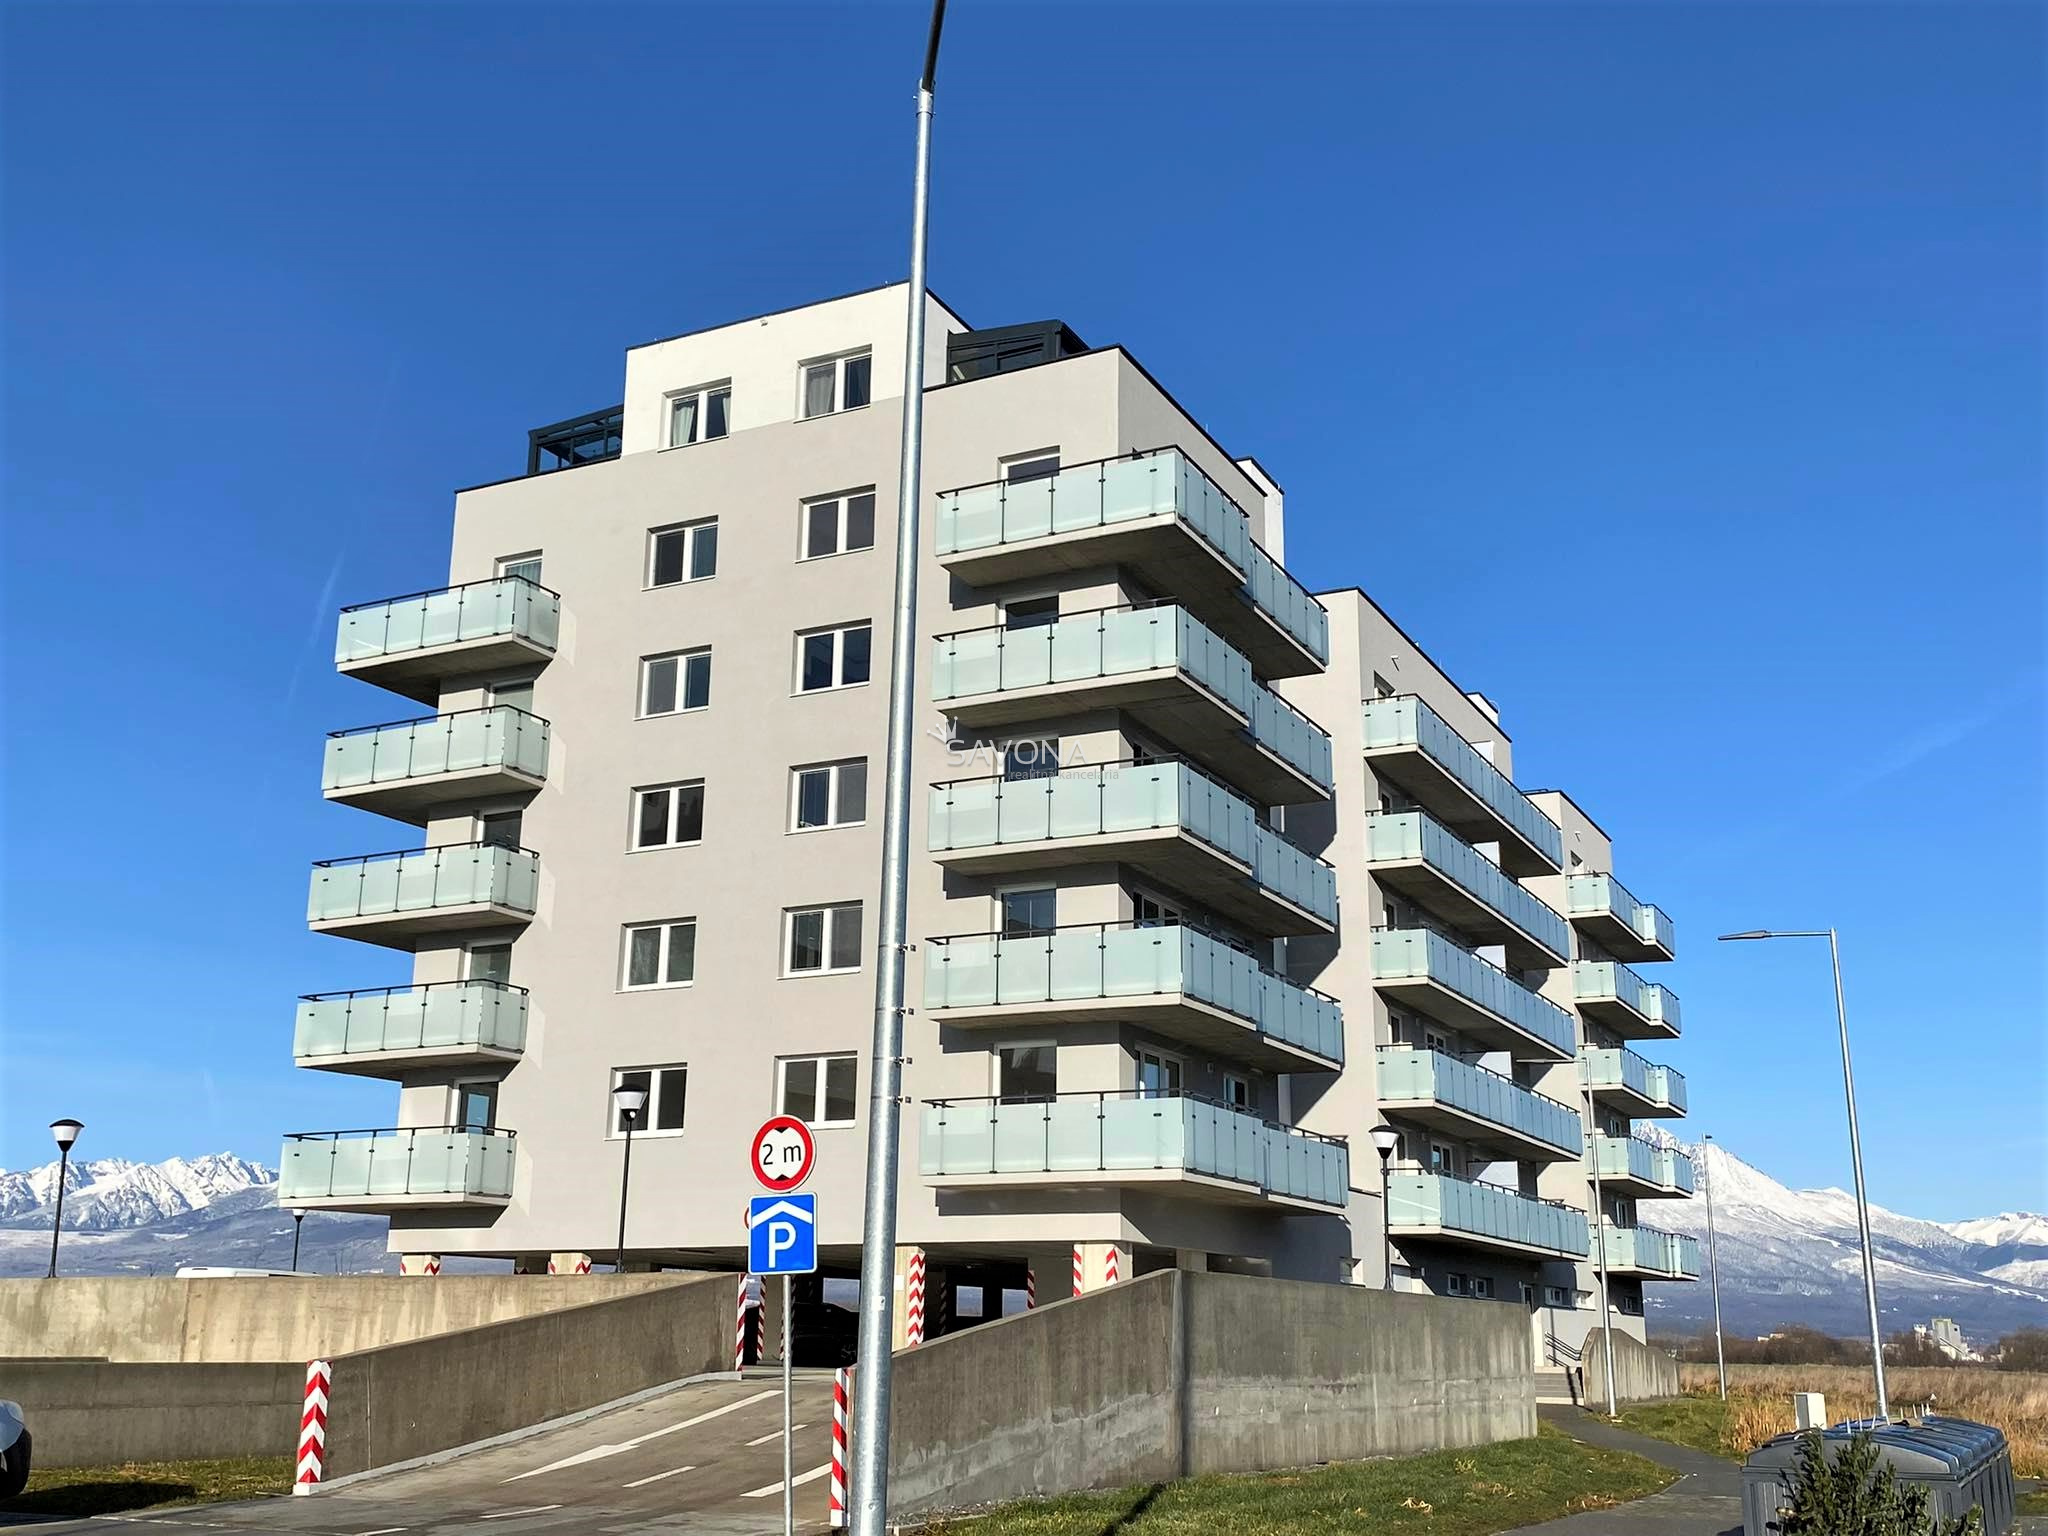 PRENAJATÝ |  novostavba 2 izbového bytu s parkovacím státím, sídlisko JUH III, POPRAD